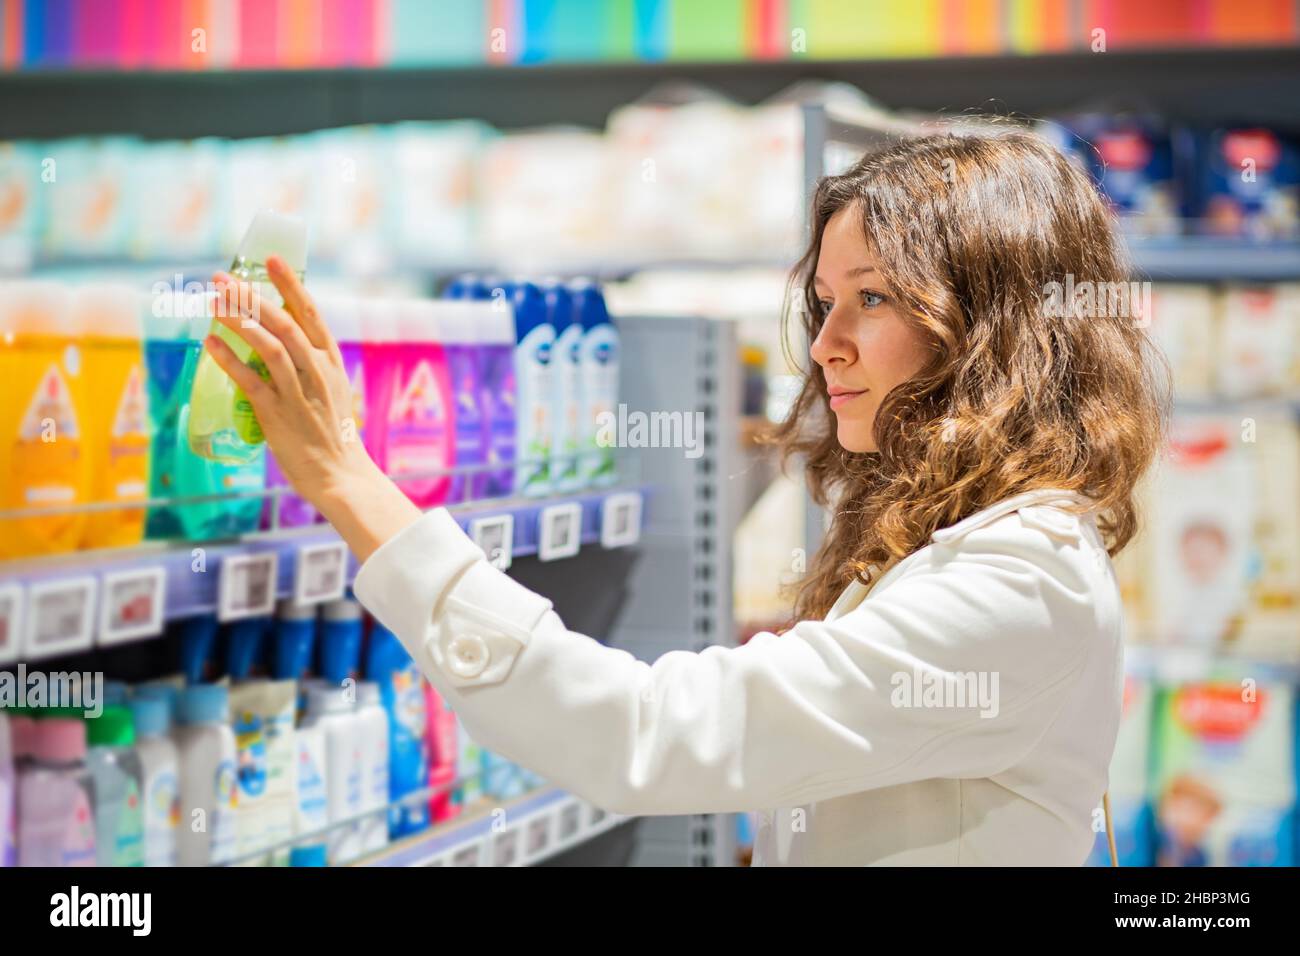 Schöne junge Frau in einem weißen Mantel nimmt Shampoo aus dem Regal im Supermarkt Stockfoto